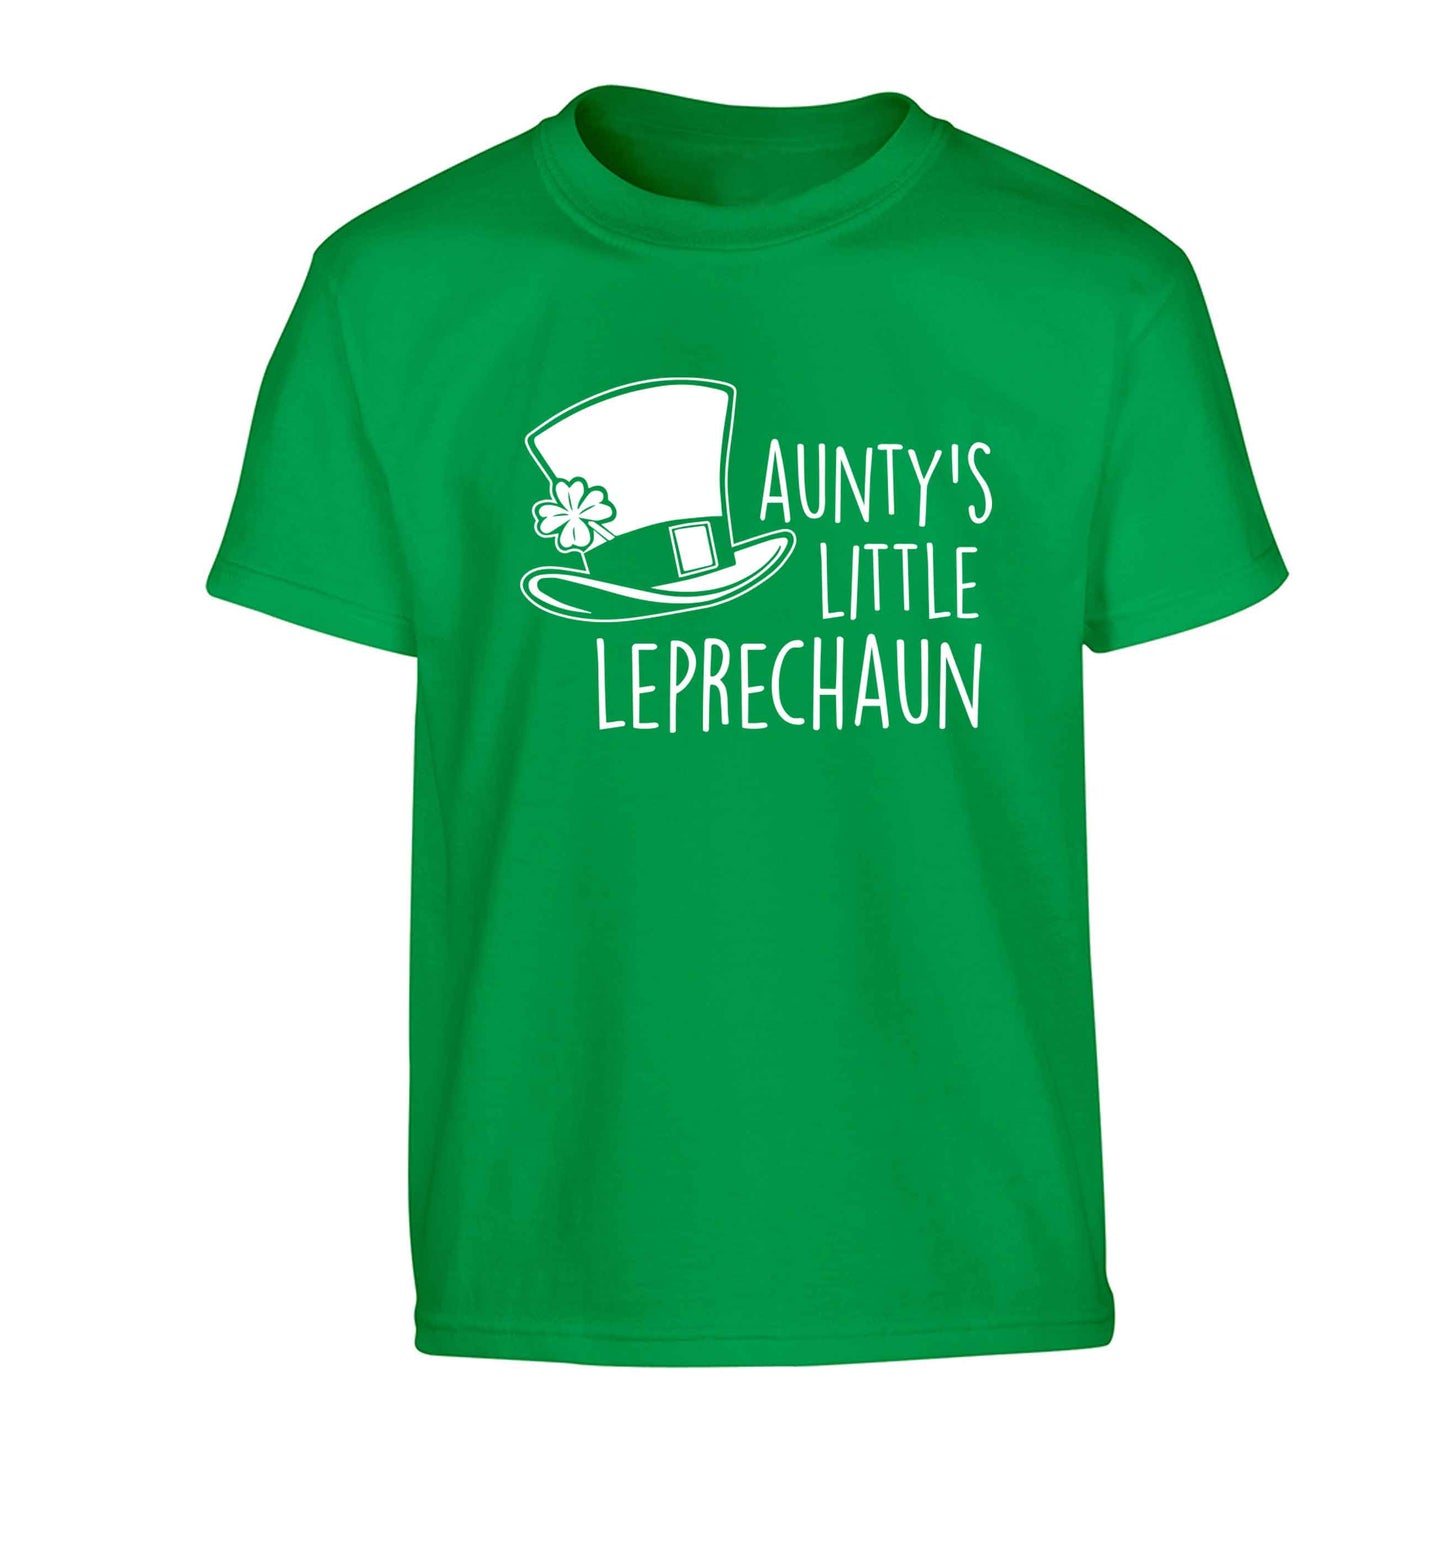 Aunty's little leprechaun Children's green Tshirt 12-13 Years